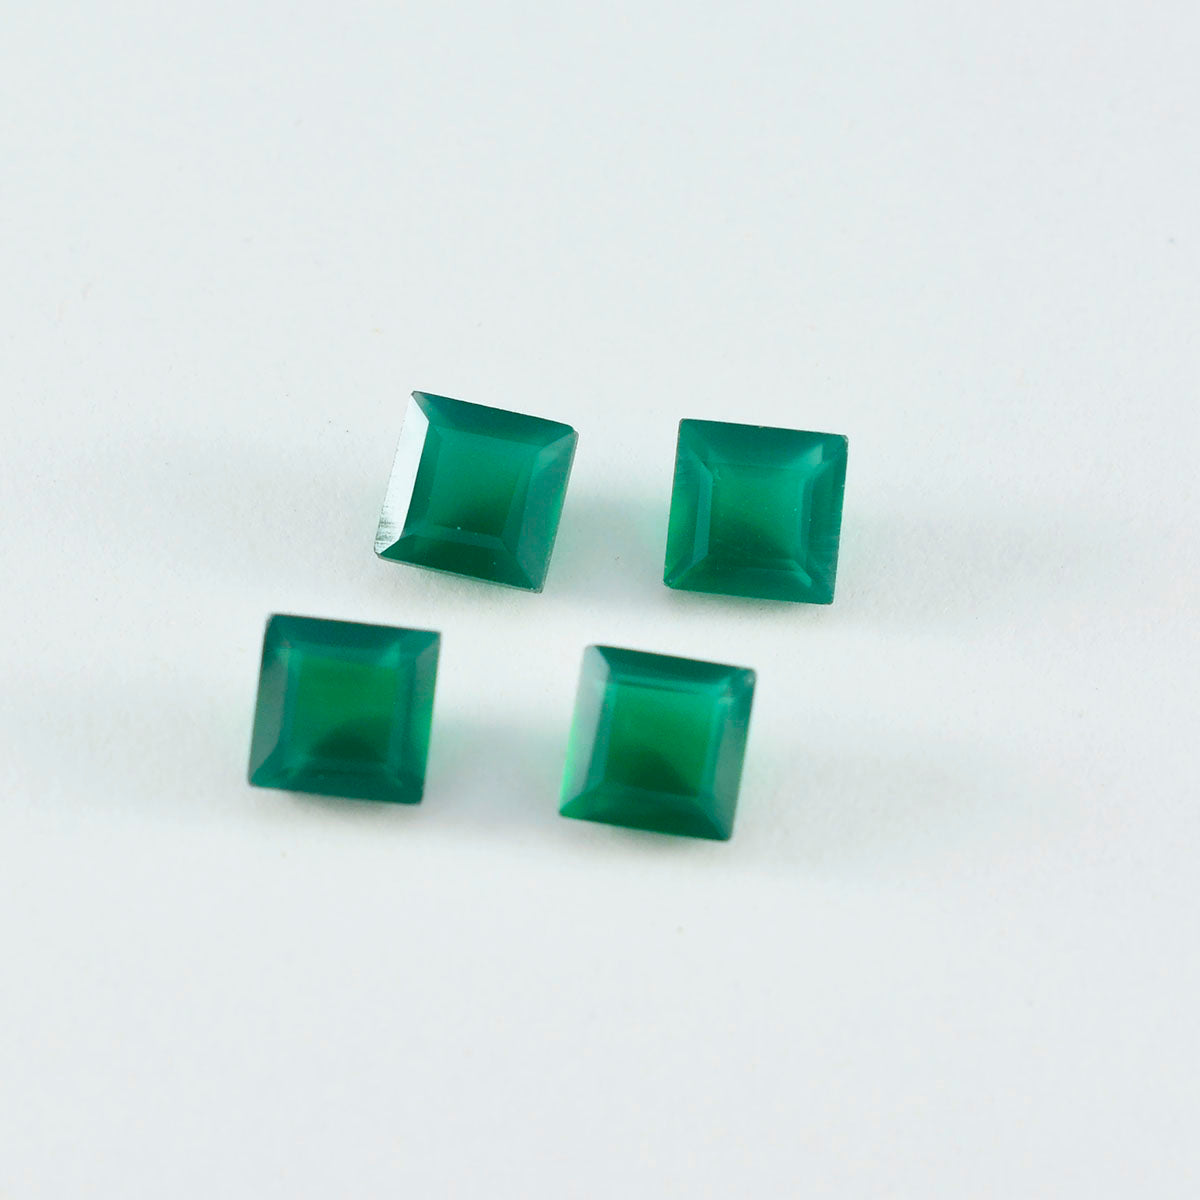 Riyogems 1 pieza de ónix verde auténtico facetado 8x8mm forma cuadrada piedra de buena calidad